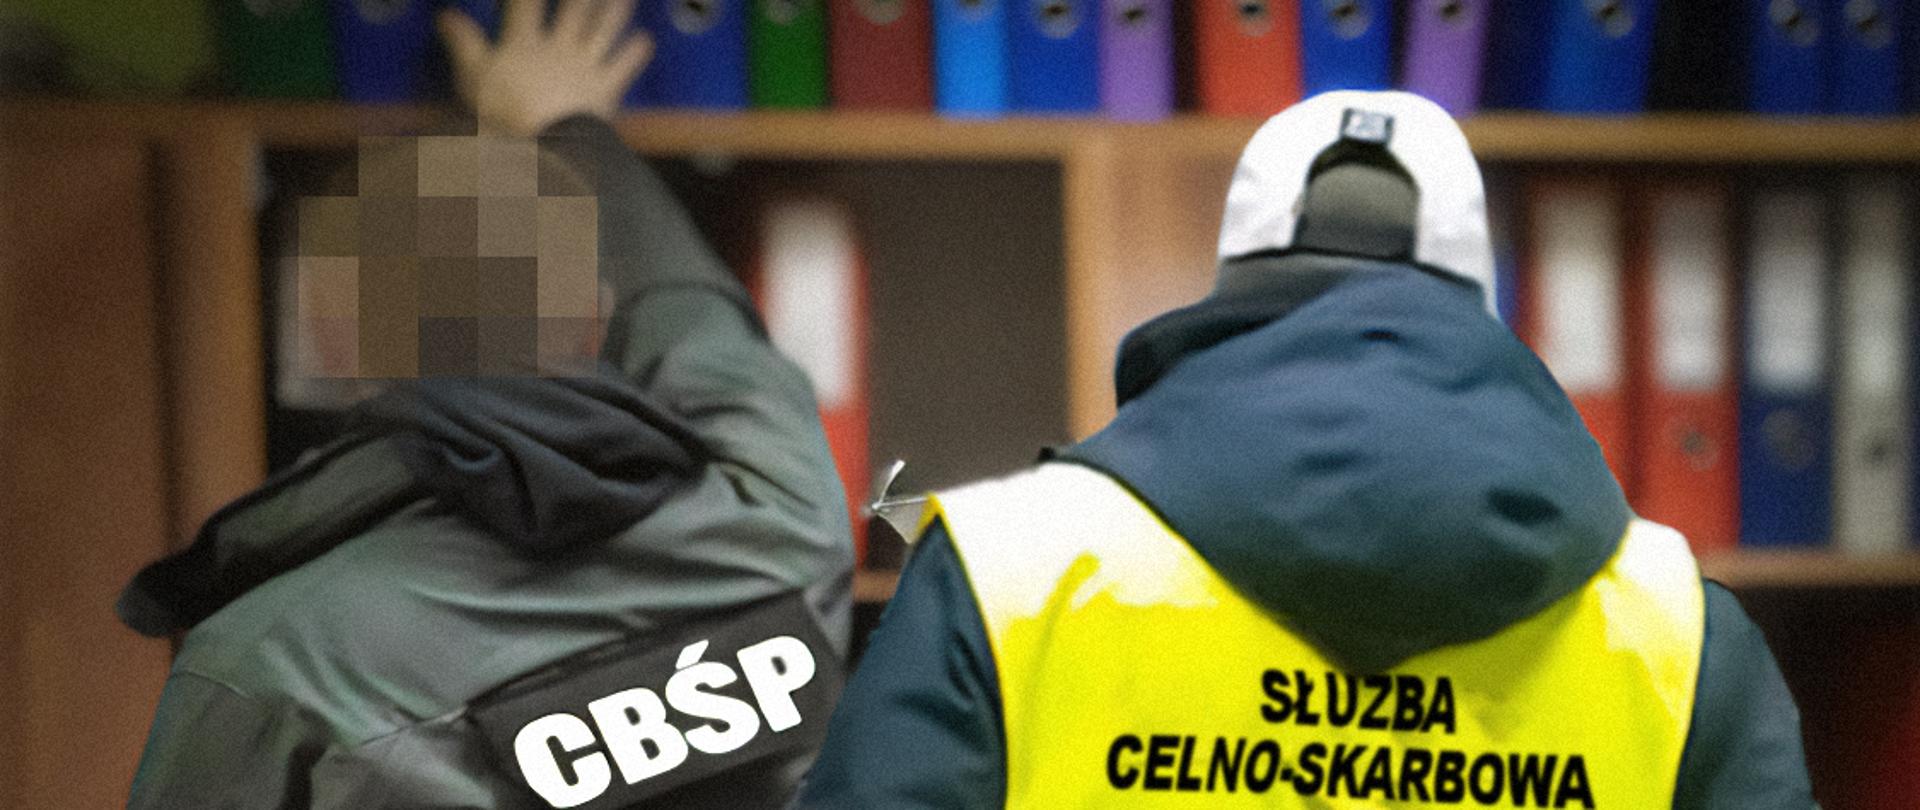 Funkcjonariusze CBŚP i Służby Celno-Skarbowej przy regale z segregatorami z dokumentami.